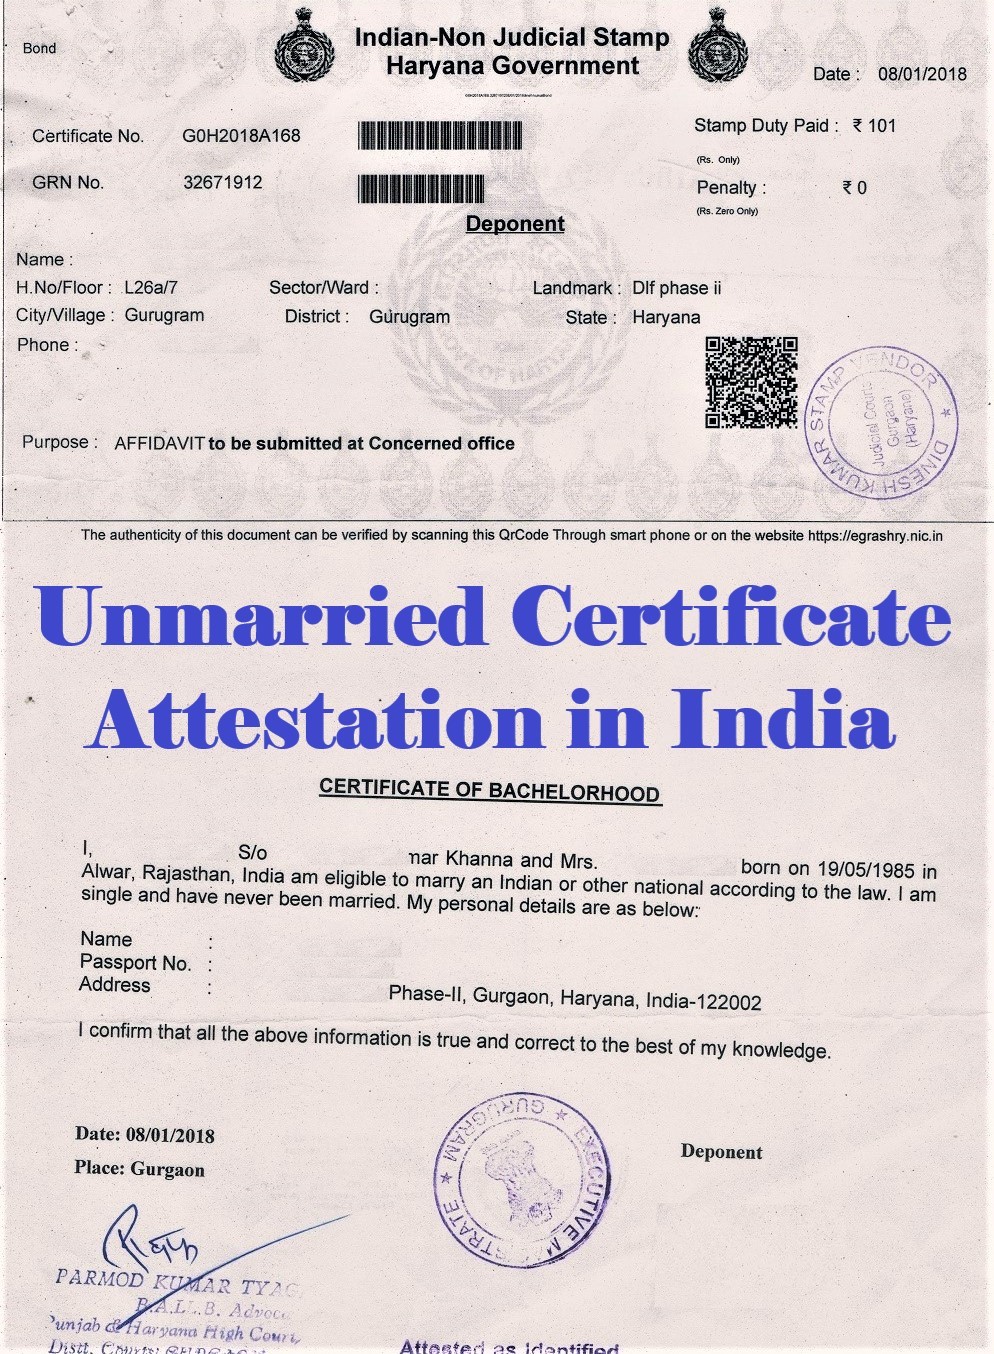 Unmarried Certificate Attestation from Yemen Embassy